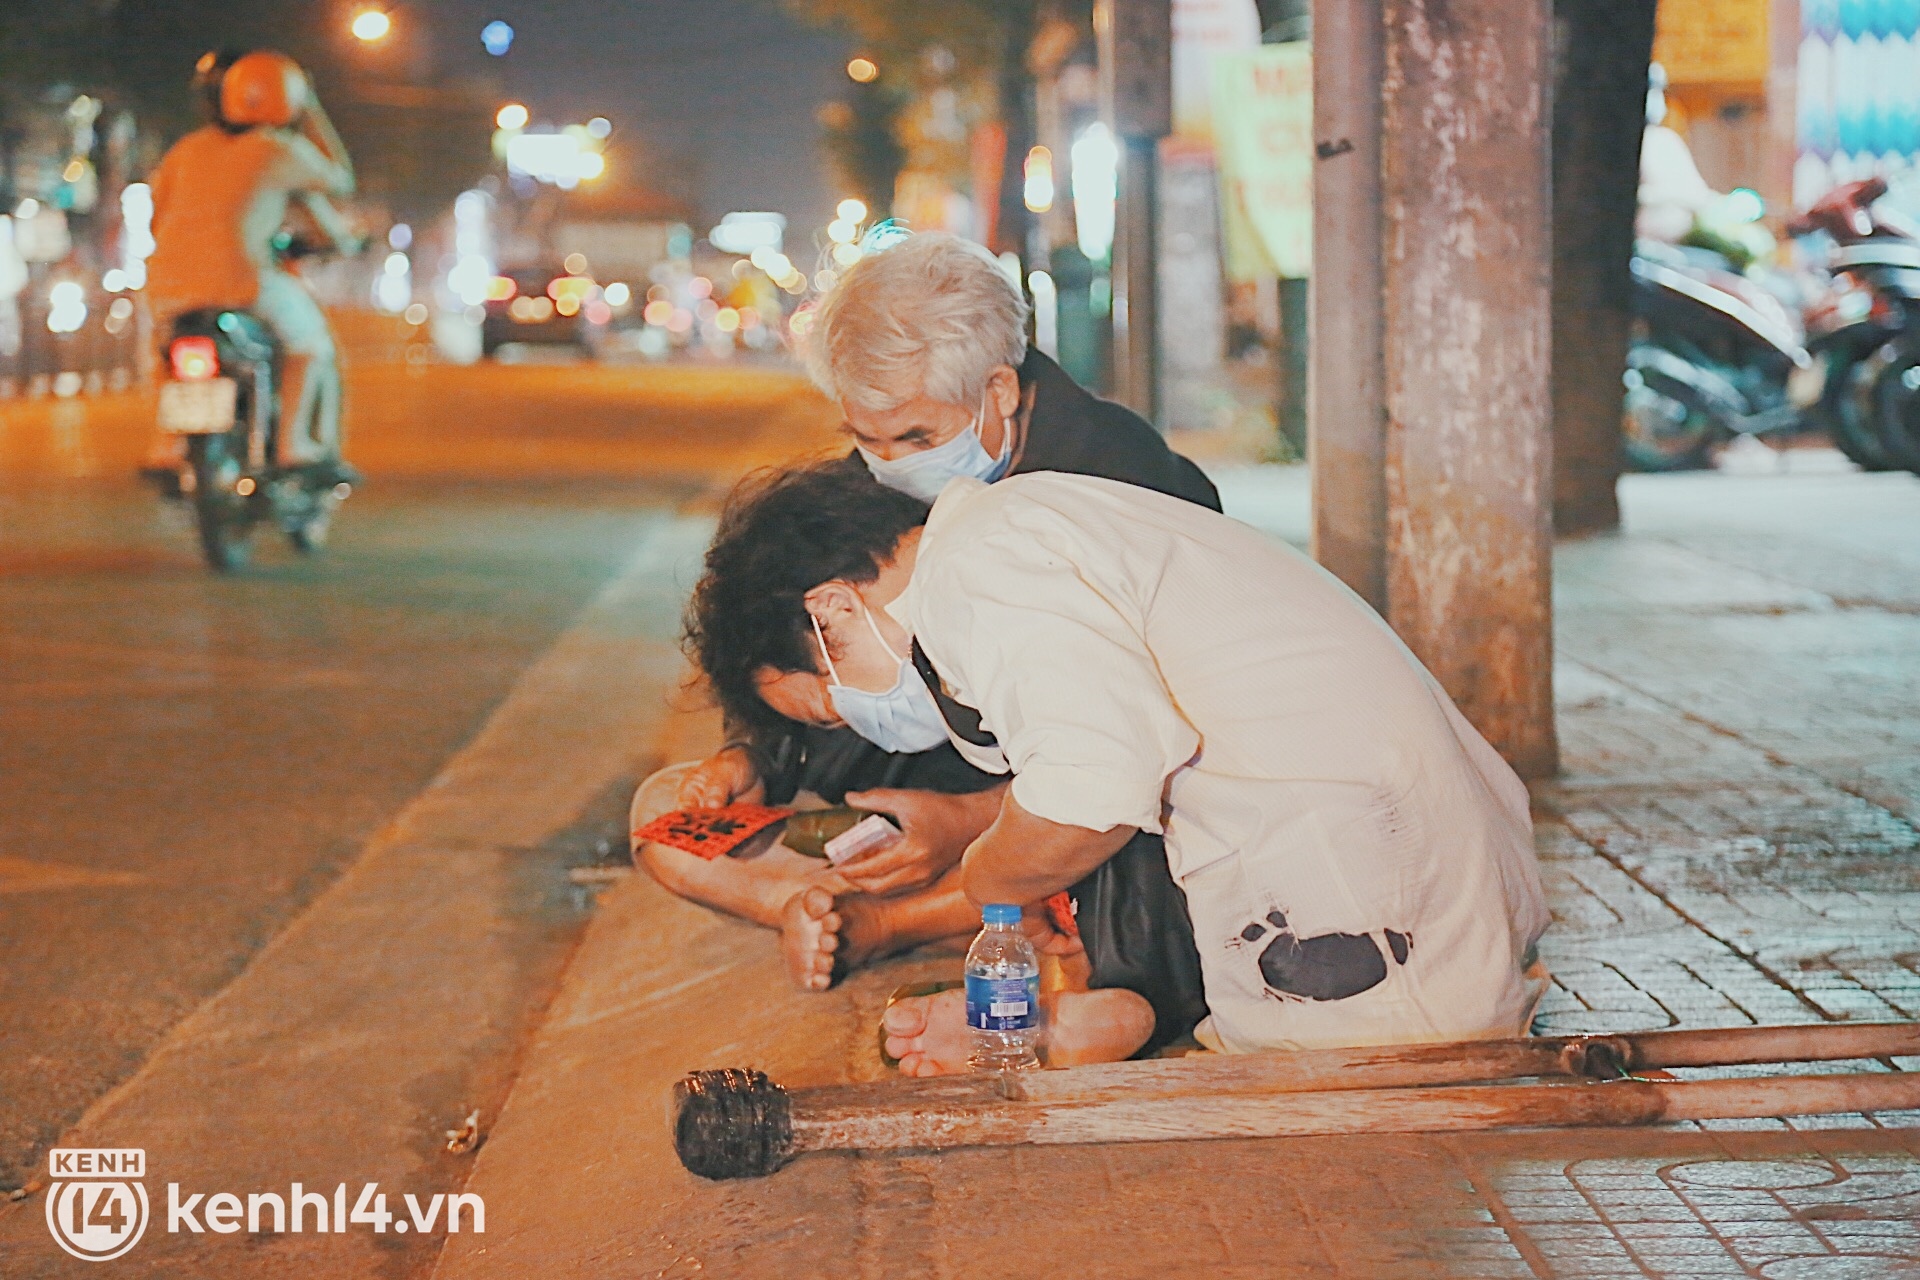 Người vô gia cư co ro trong đêm Sài Gòn ngày cận Tết: Bà làm gì có nhà để về, ở đây người ta cho đồ ăn, quý lắm... - Ảnh 7.